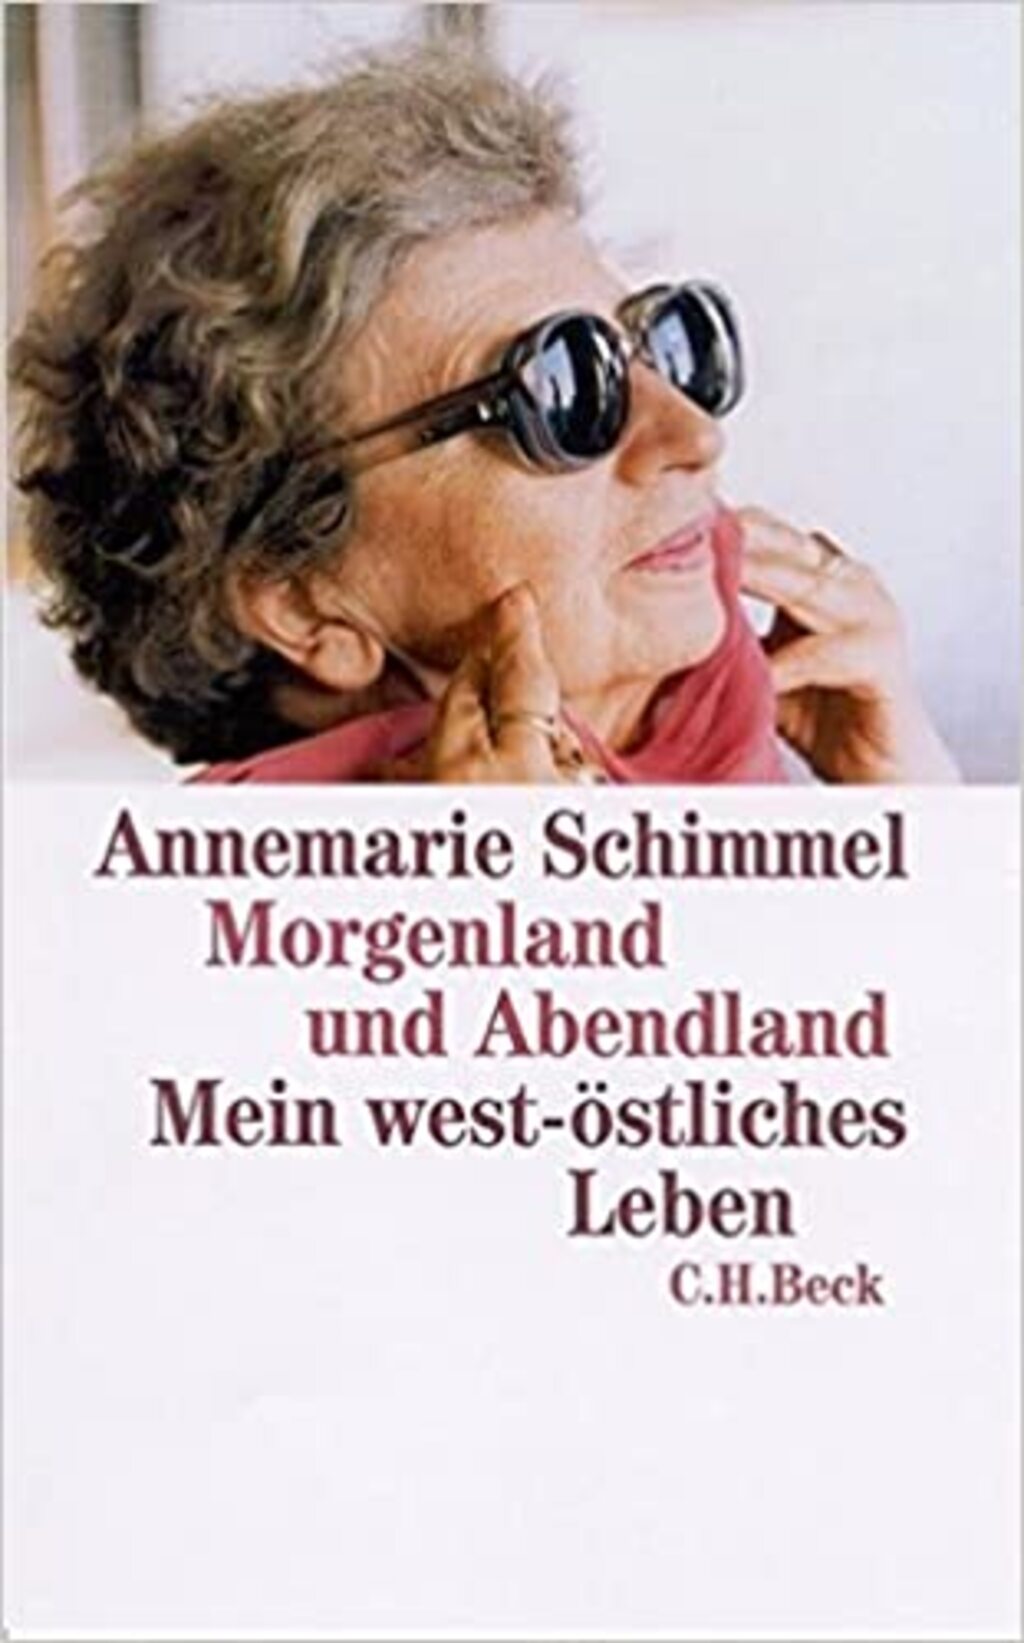 Cover von Annemarie Schimmel "Morgenland und Abendland. Mein west-östliches Leben" CH Beck 2002; Quelle: Verlag